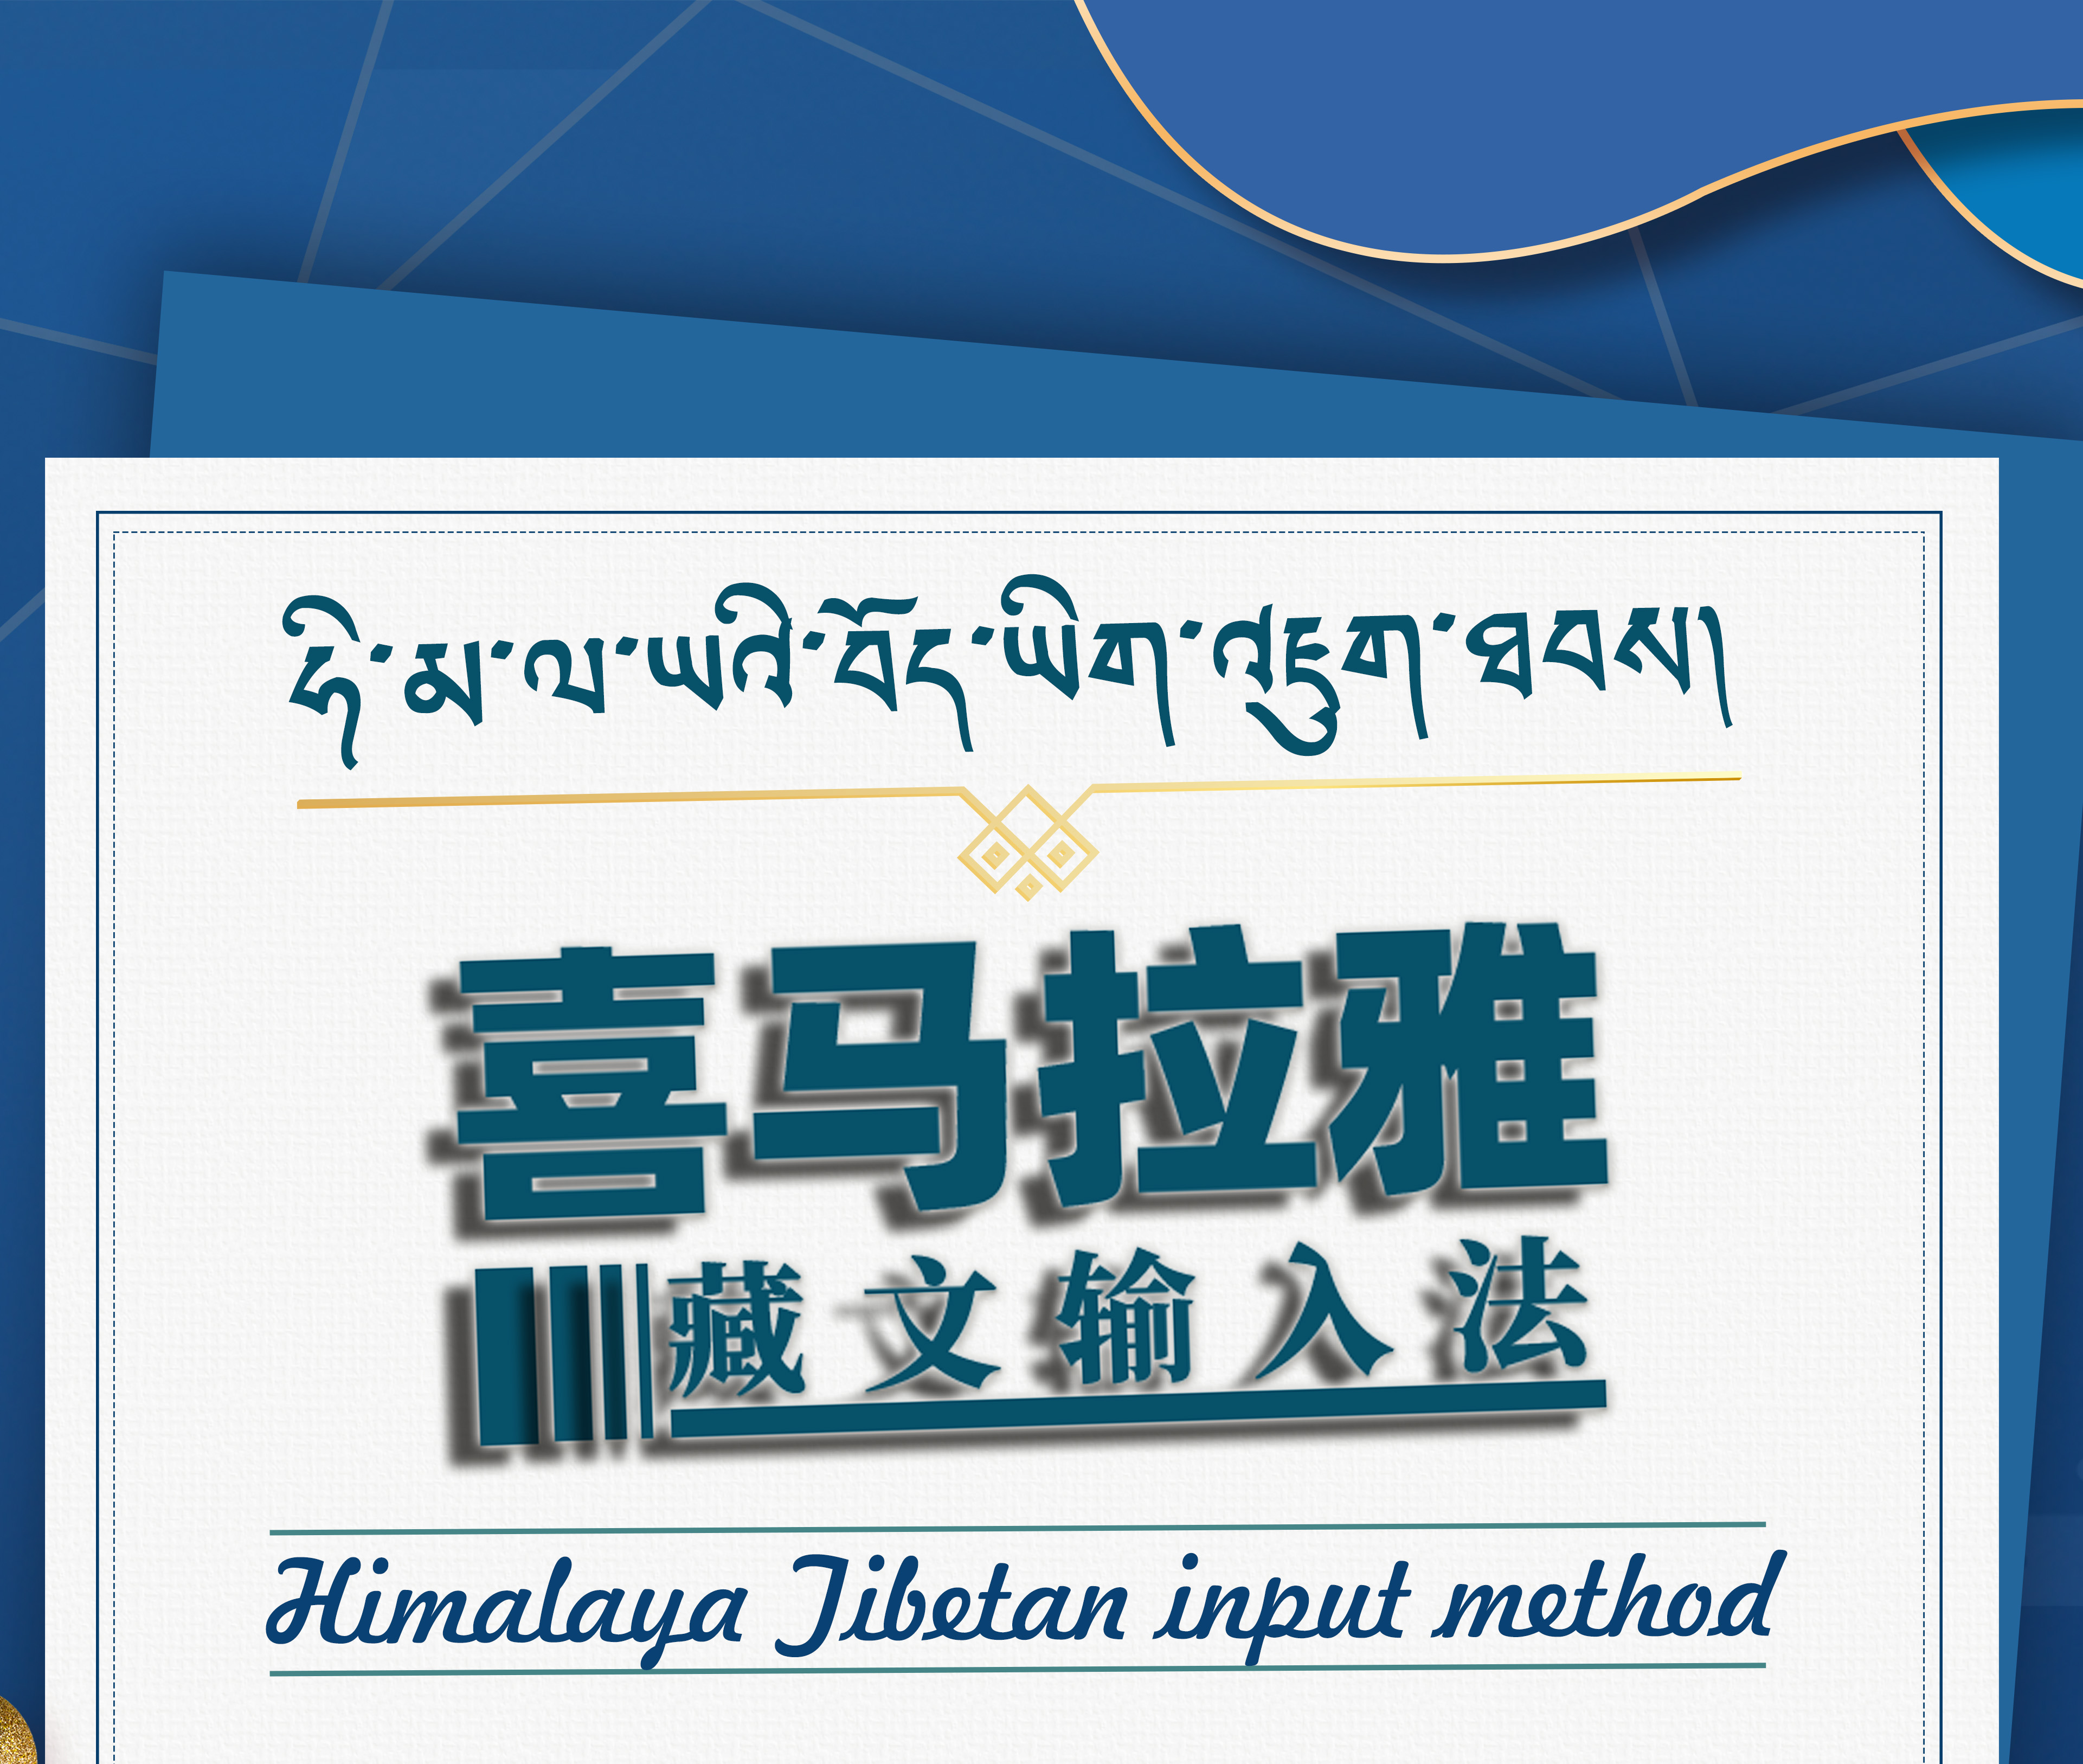 Mac喜马拉雅藏文输入法苹果系统专用藏文输入法包含安装教程 - 图0